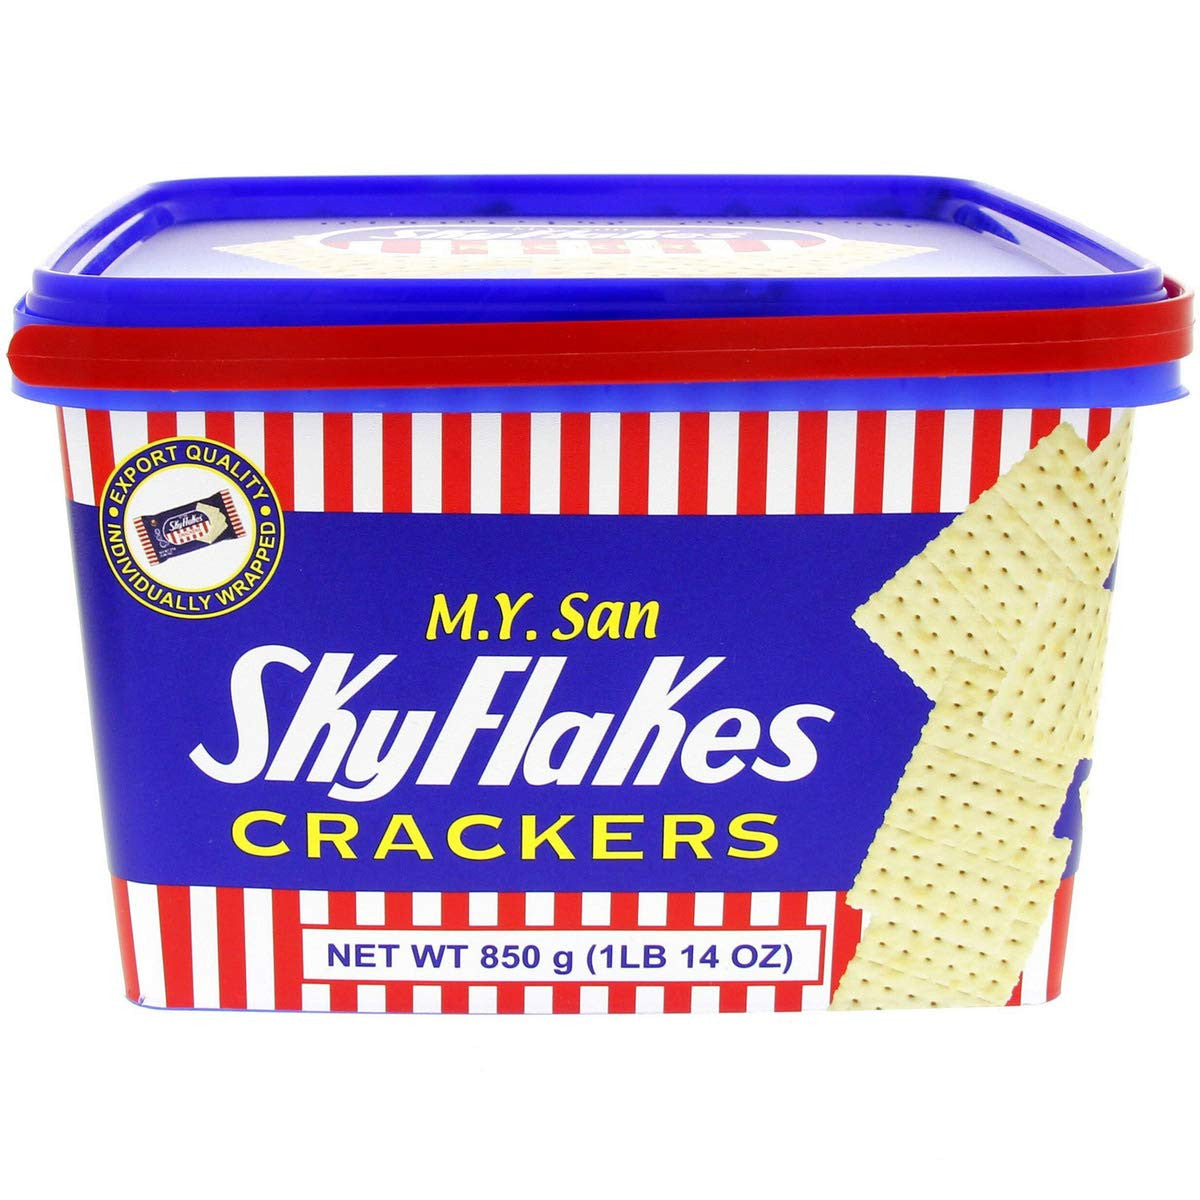 M.Y. San Skyflakes crackers sold on Niyis